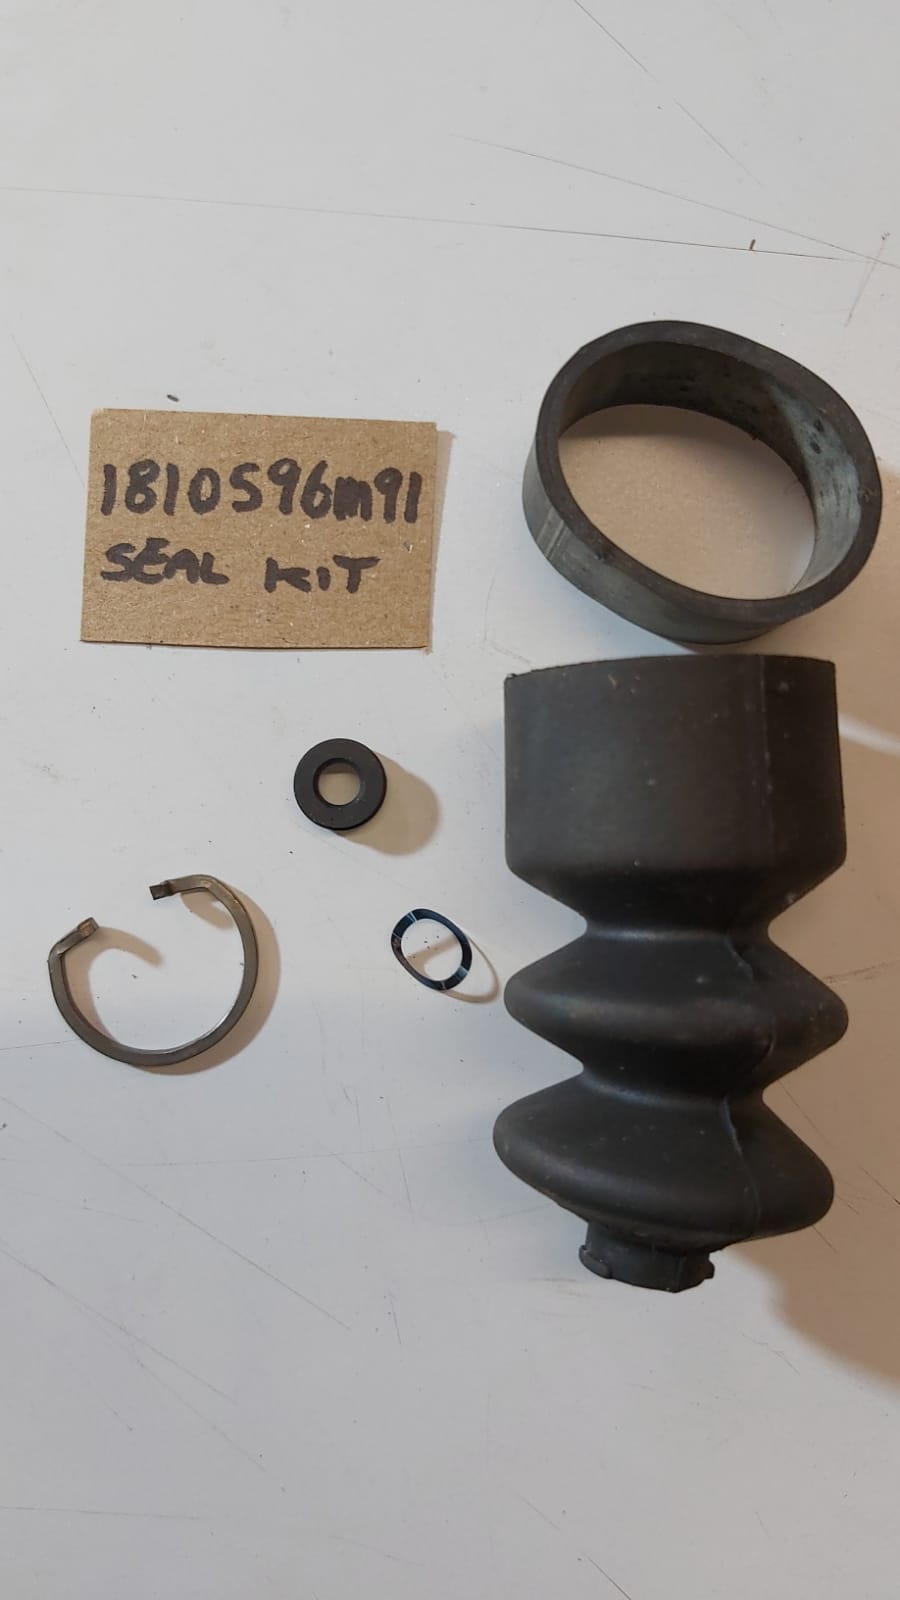 seals-kit-1810596m91